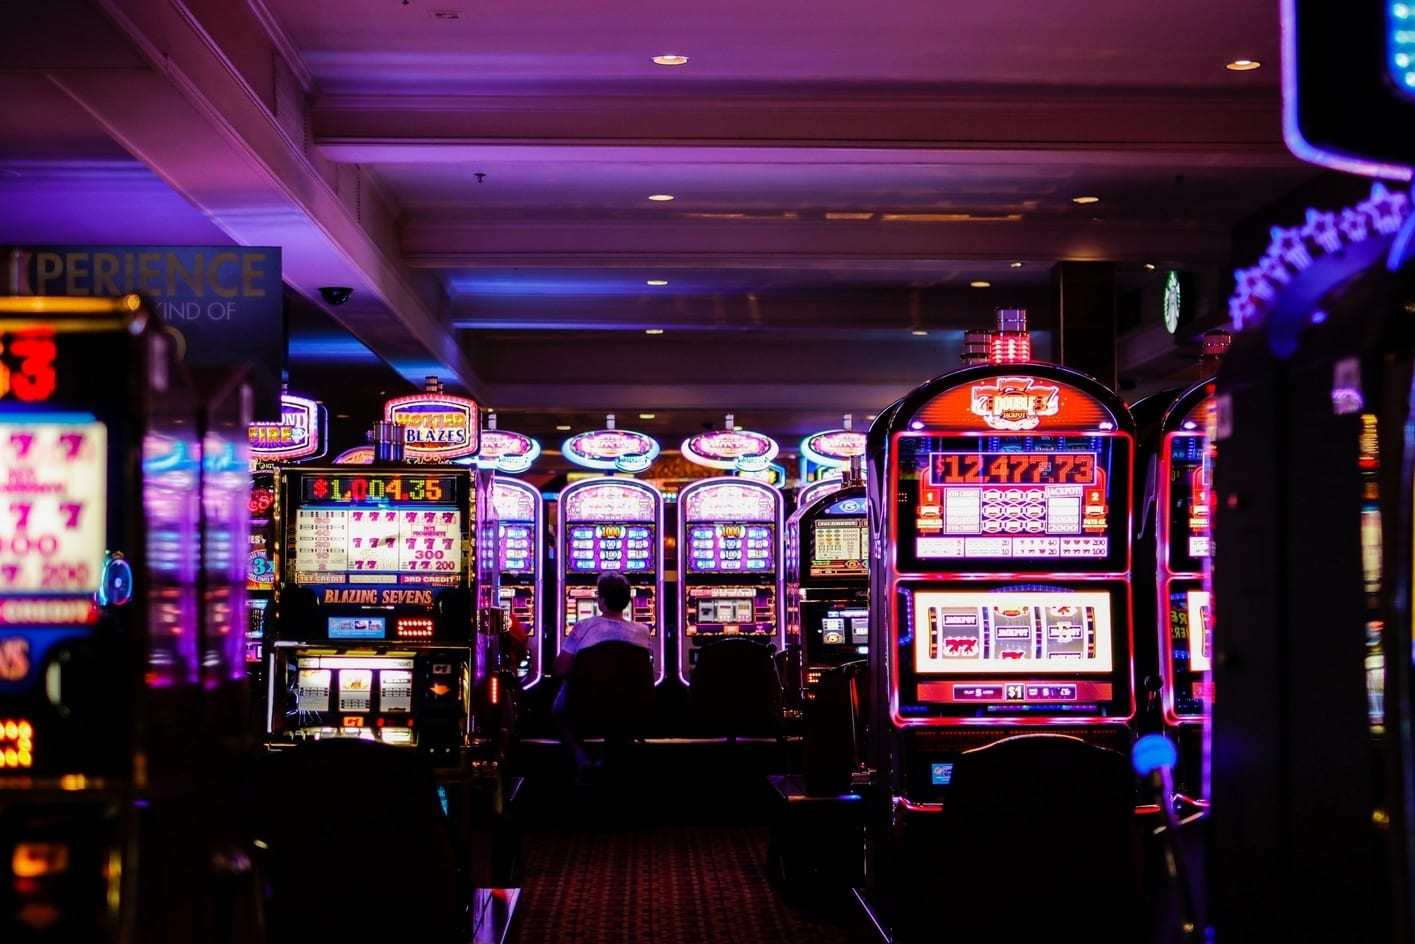 Visitar casinos, que hacer en las vegas de noche